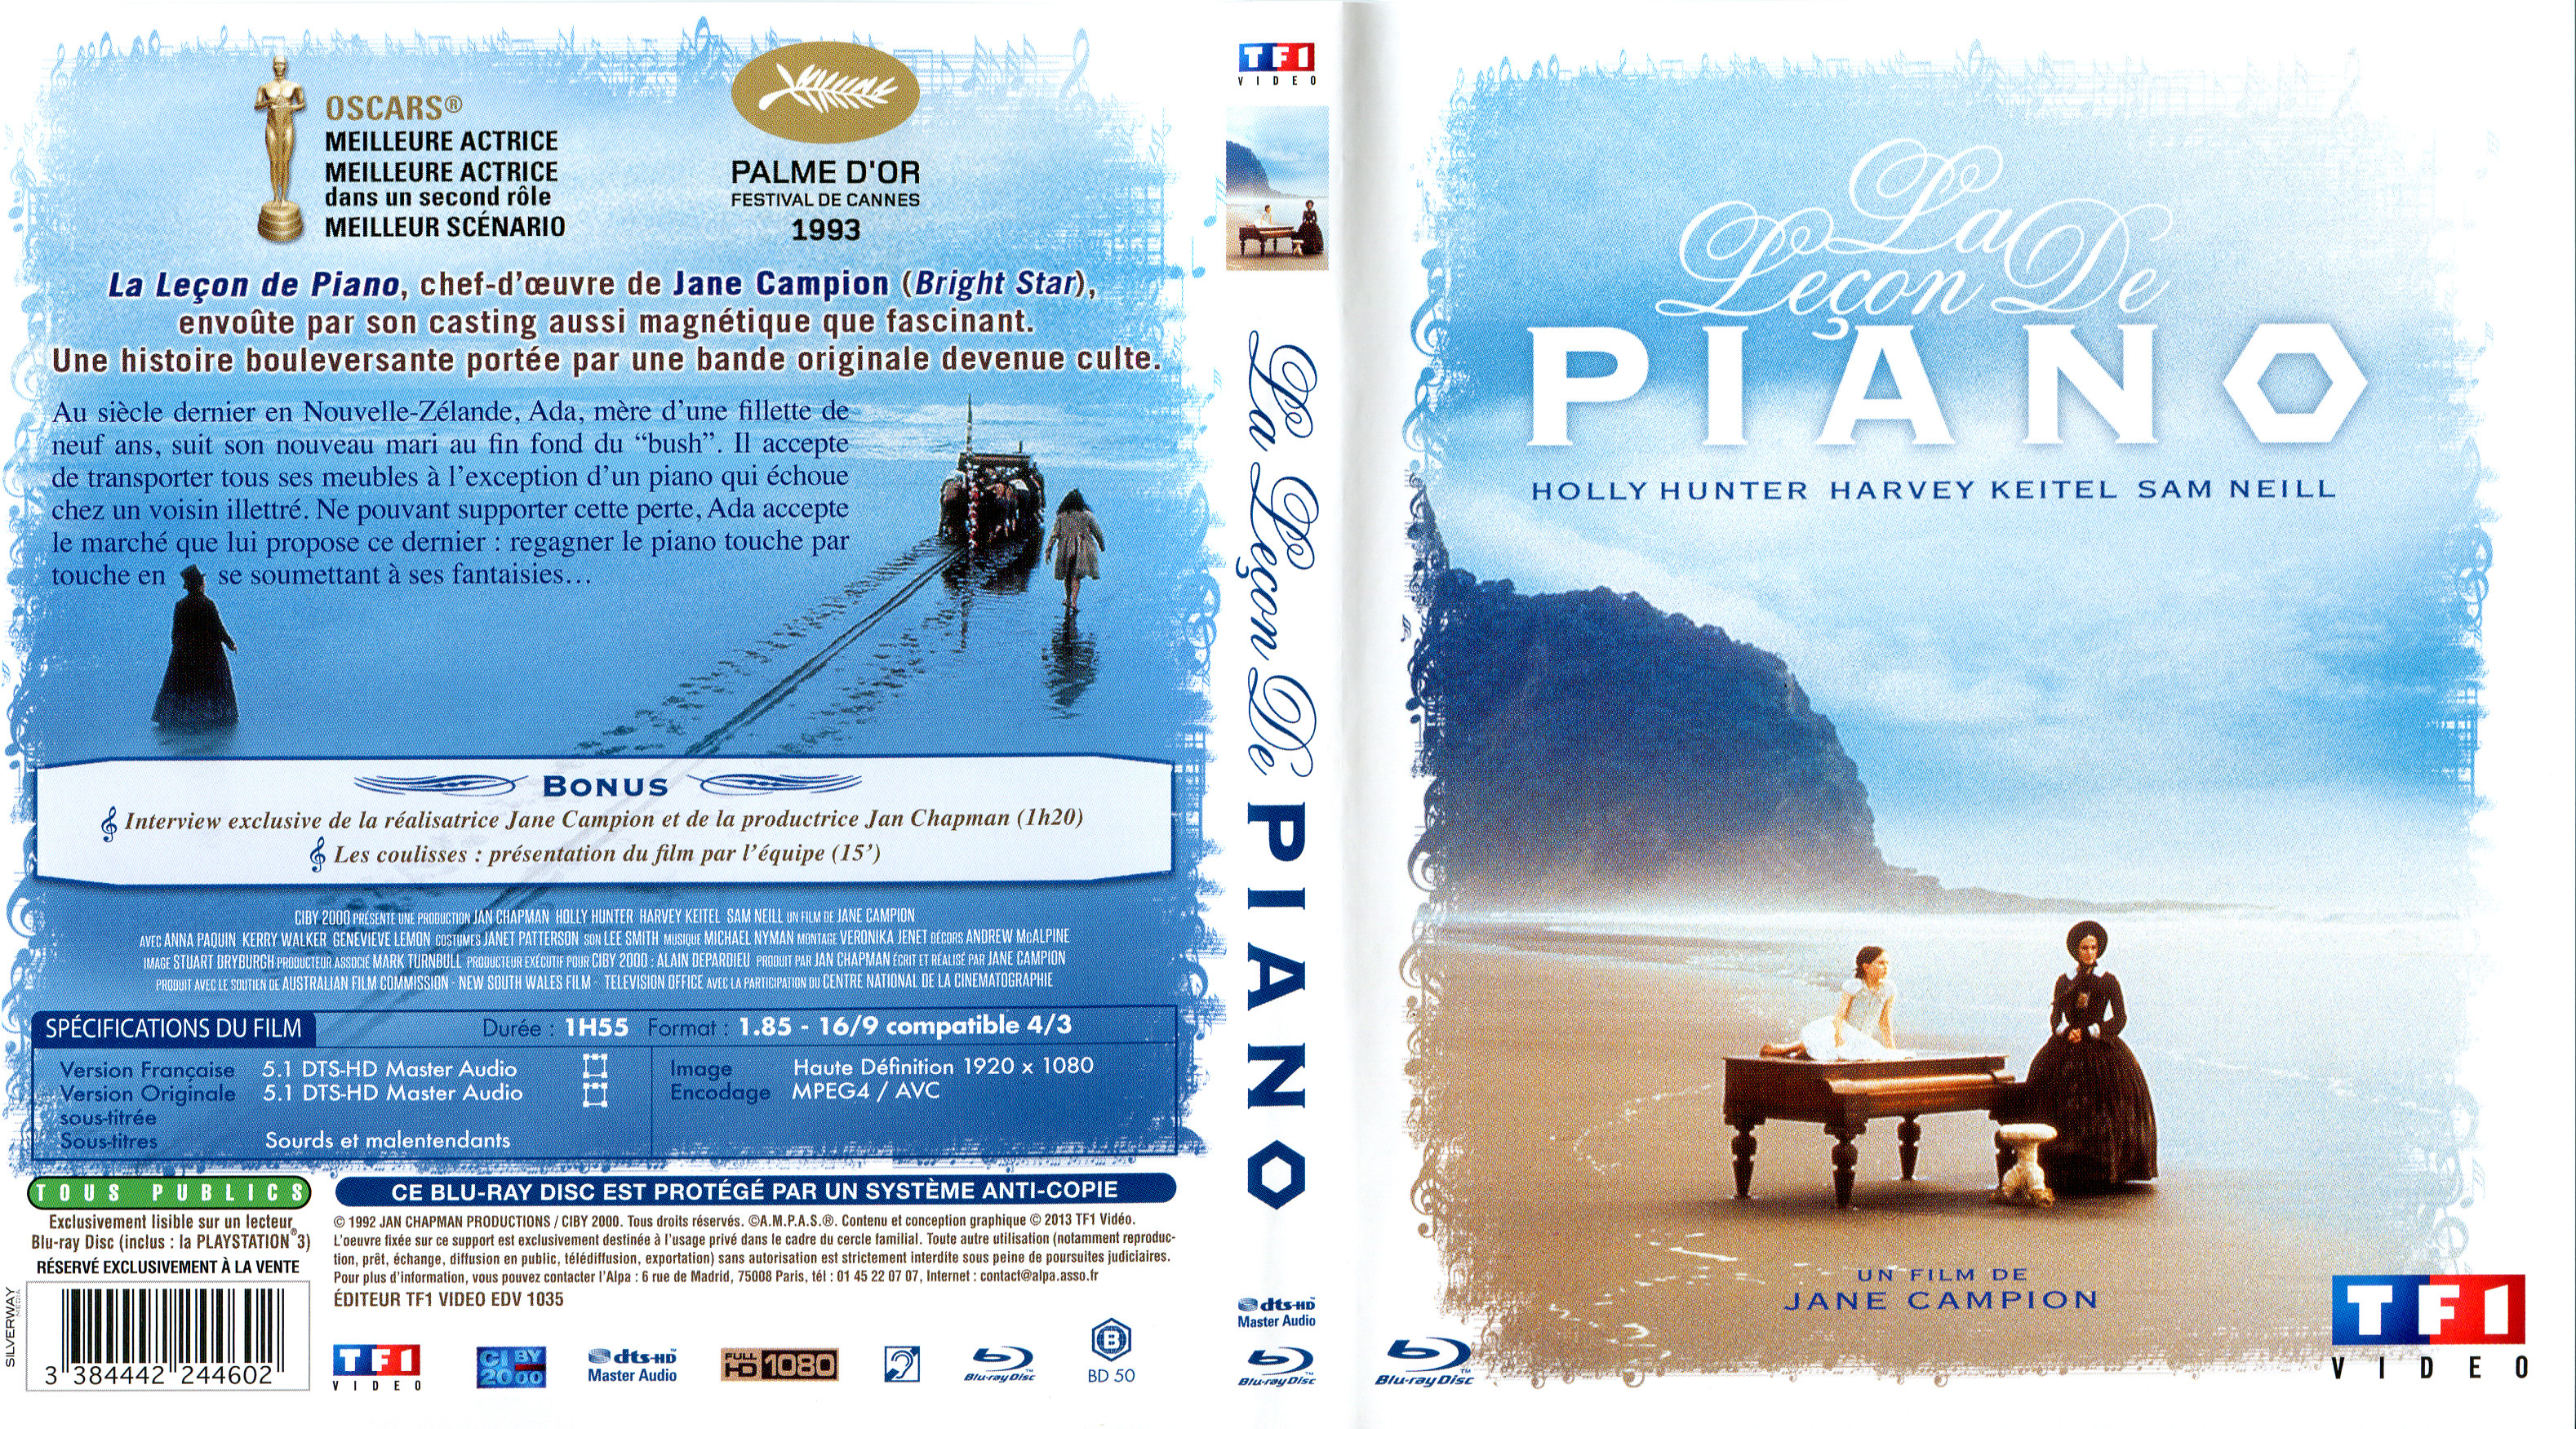 Jaquette DVD La lecon de piano (BLU-RAY)